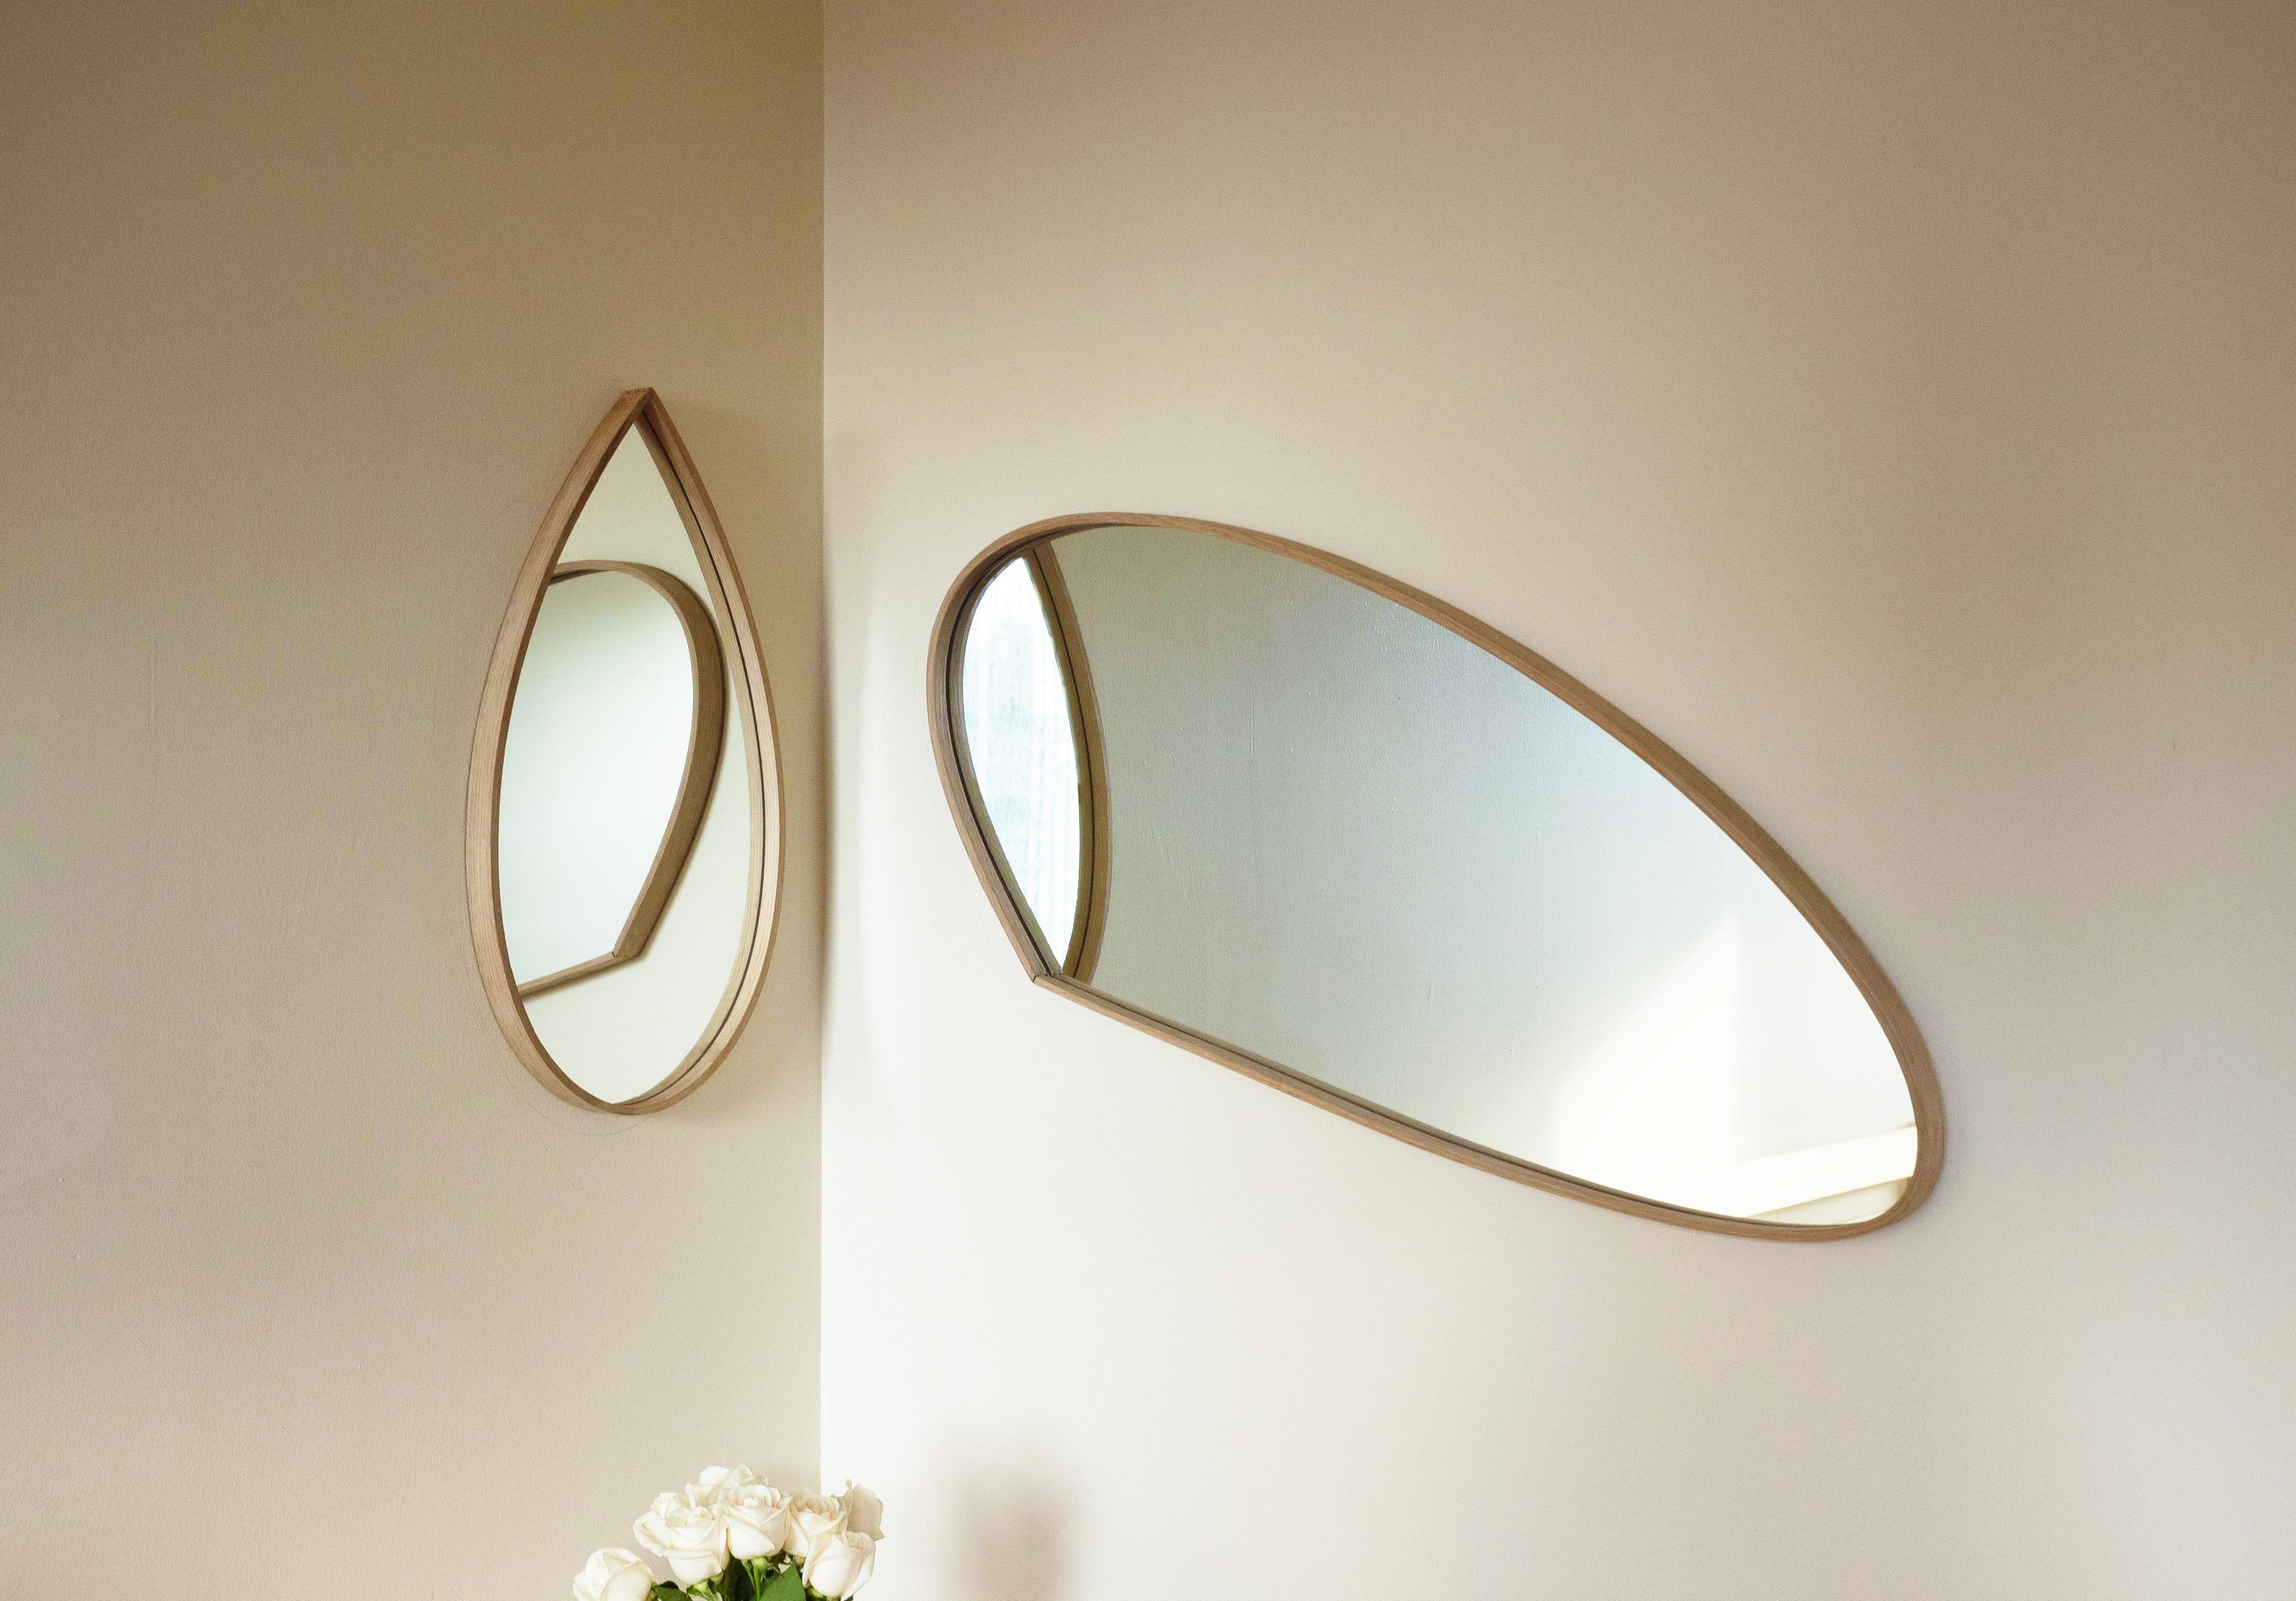 Ces miroirs d'angle de Soo Joo ont une beauté intemporelle qui n'est pas affectée par l'évolution des tendances et peut être appréciée pendant des décennies. Ce miroir sculptural s'intègre à tous les intérieurs grâce à son matériau en bois naturel